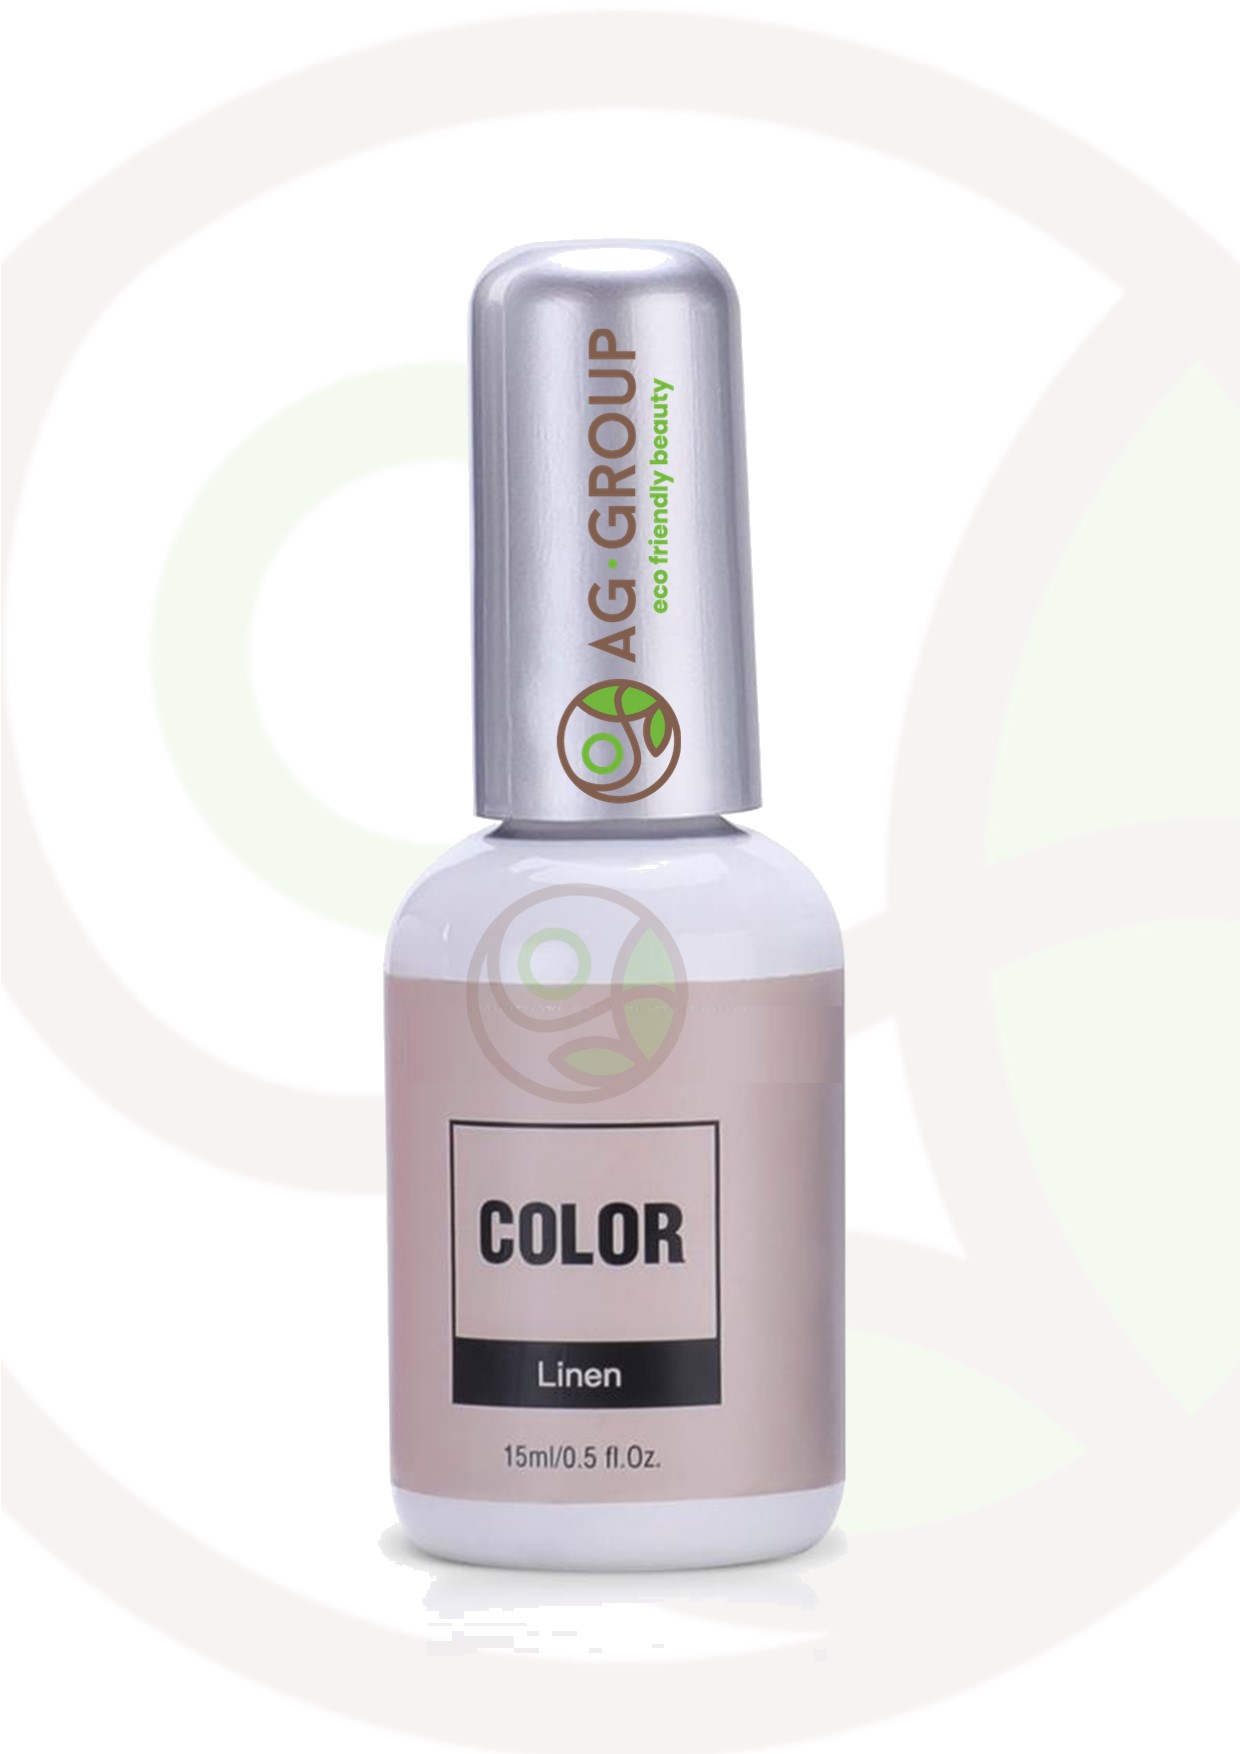 Featured image for “Gel polish soak -off led/uv- color linen”